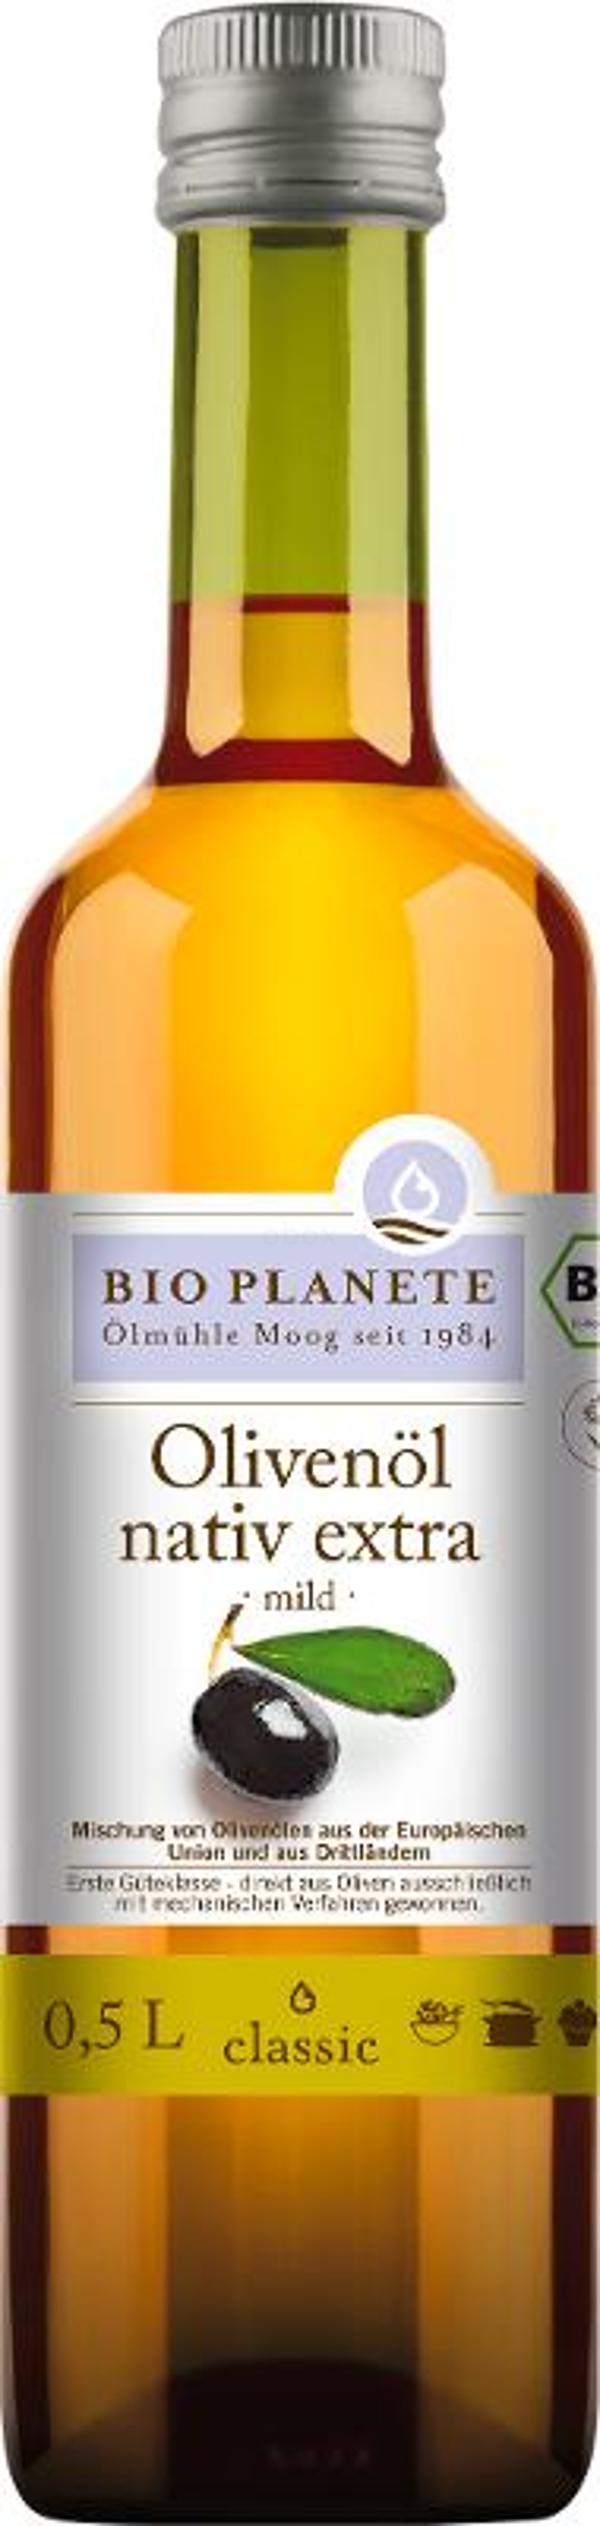 Produktfoto zu Olivenöl mild nativ extra 0,5l